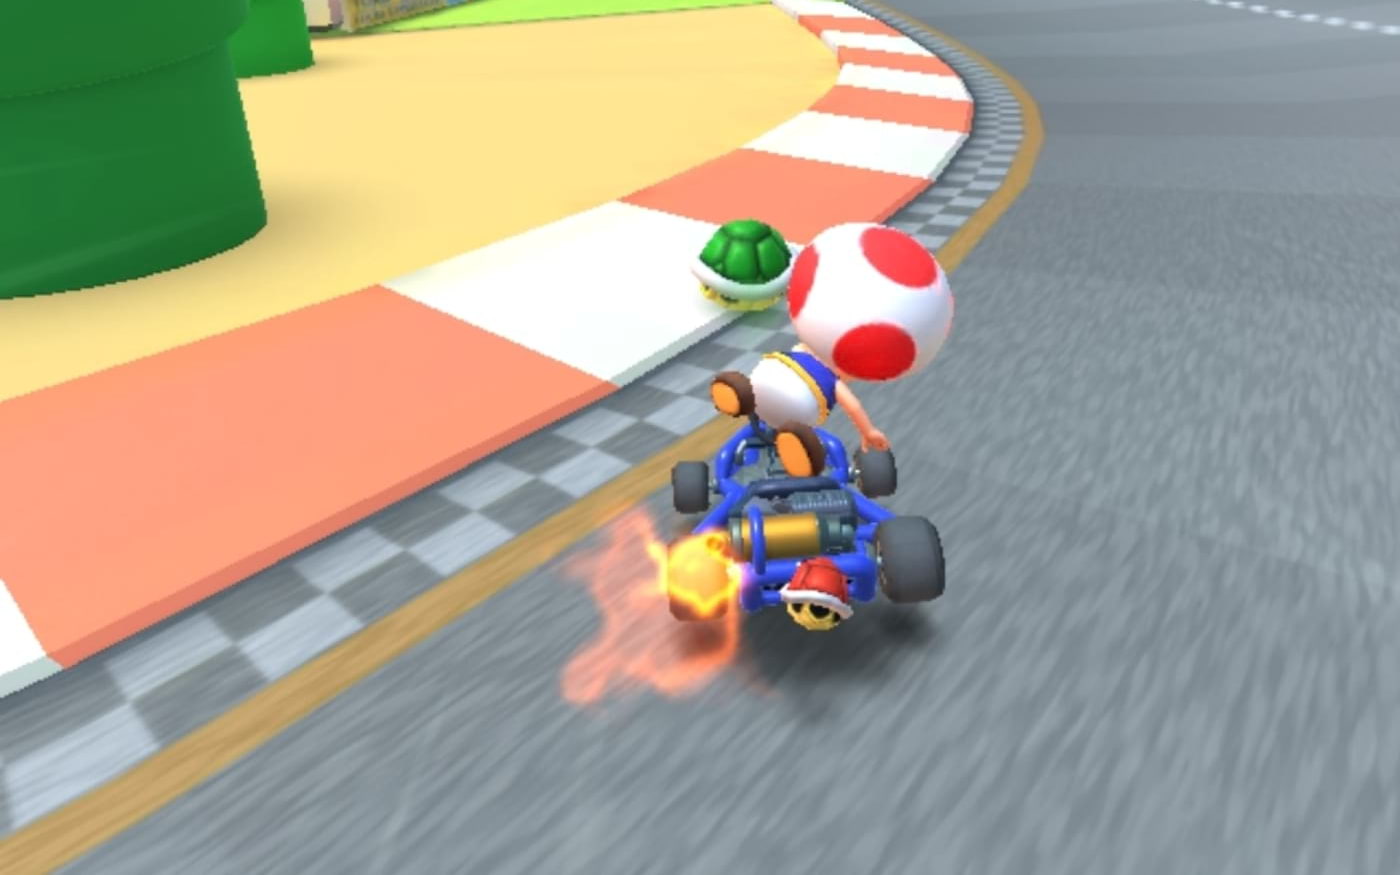 Mario Kart Tour será lançado para Android e iOS em 25 de setembro